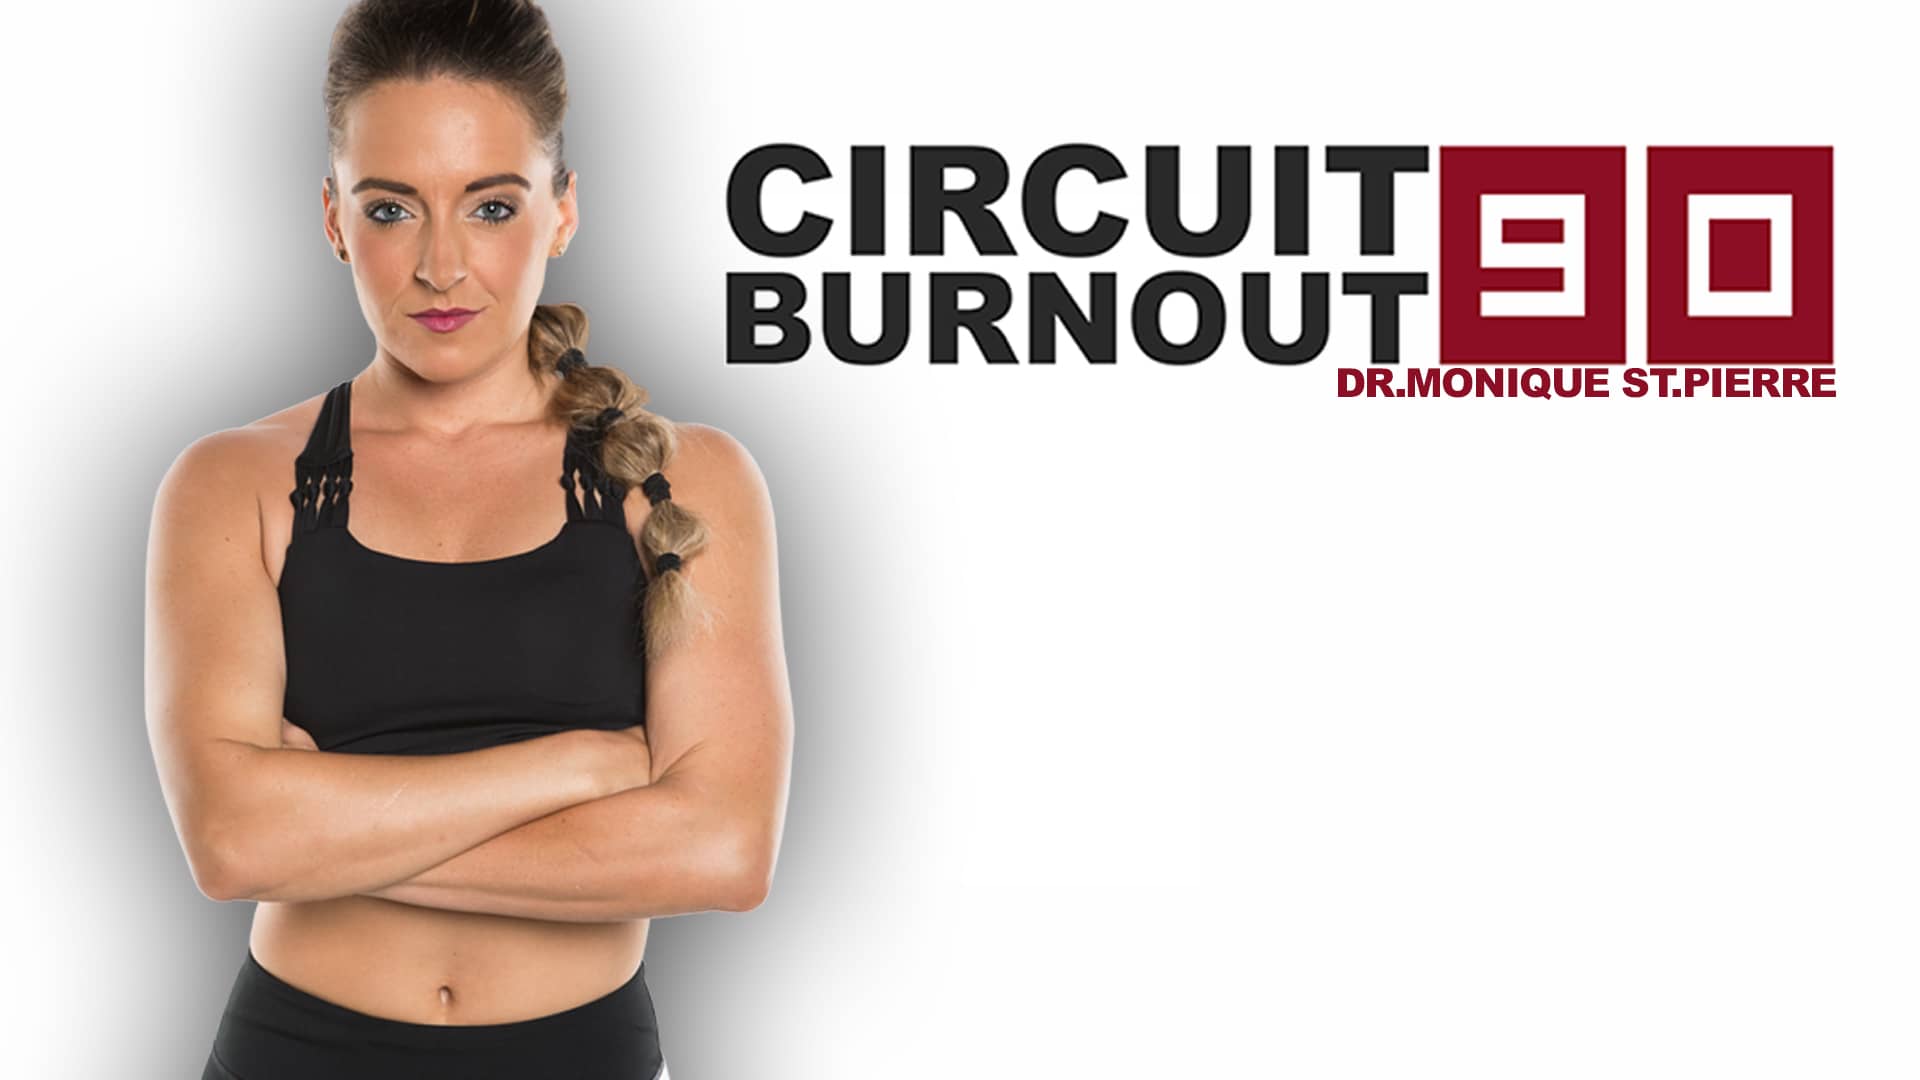 Circuit Burnout 90 Dr.Monique St.Pierre on Vimeo